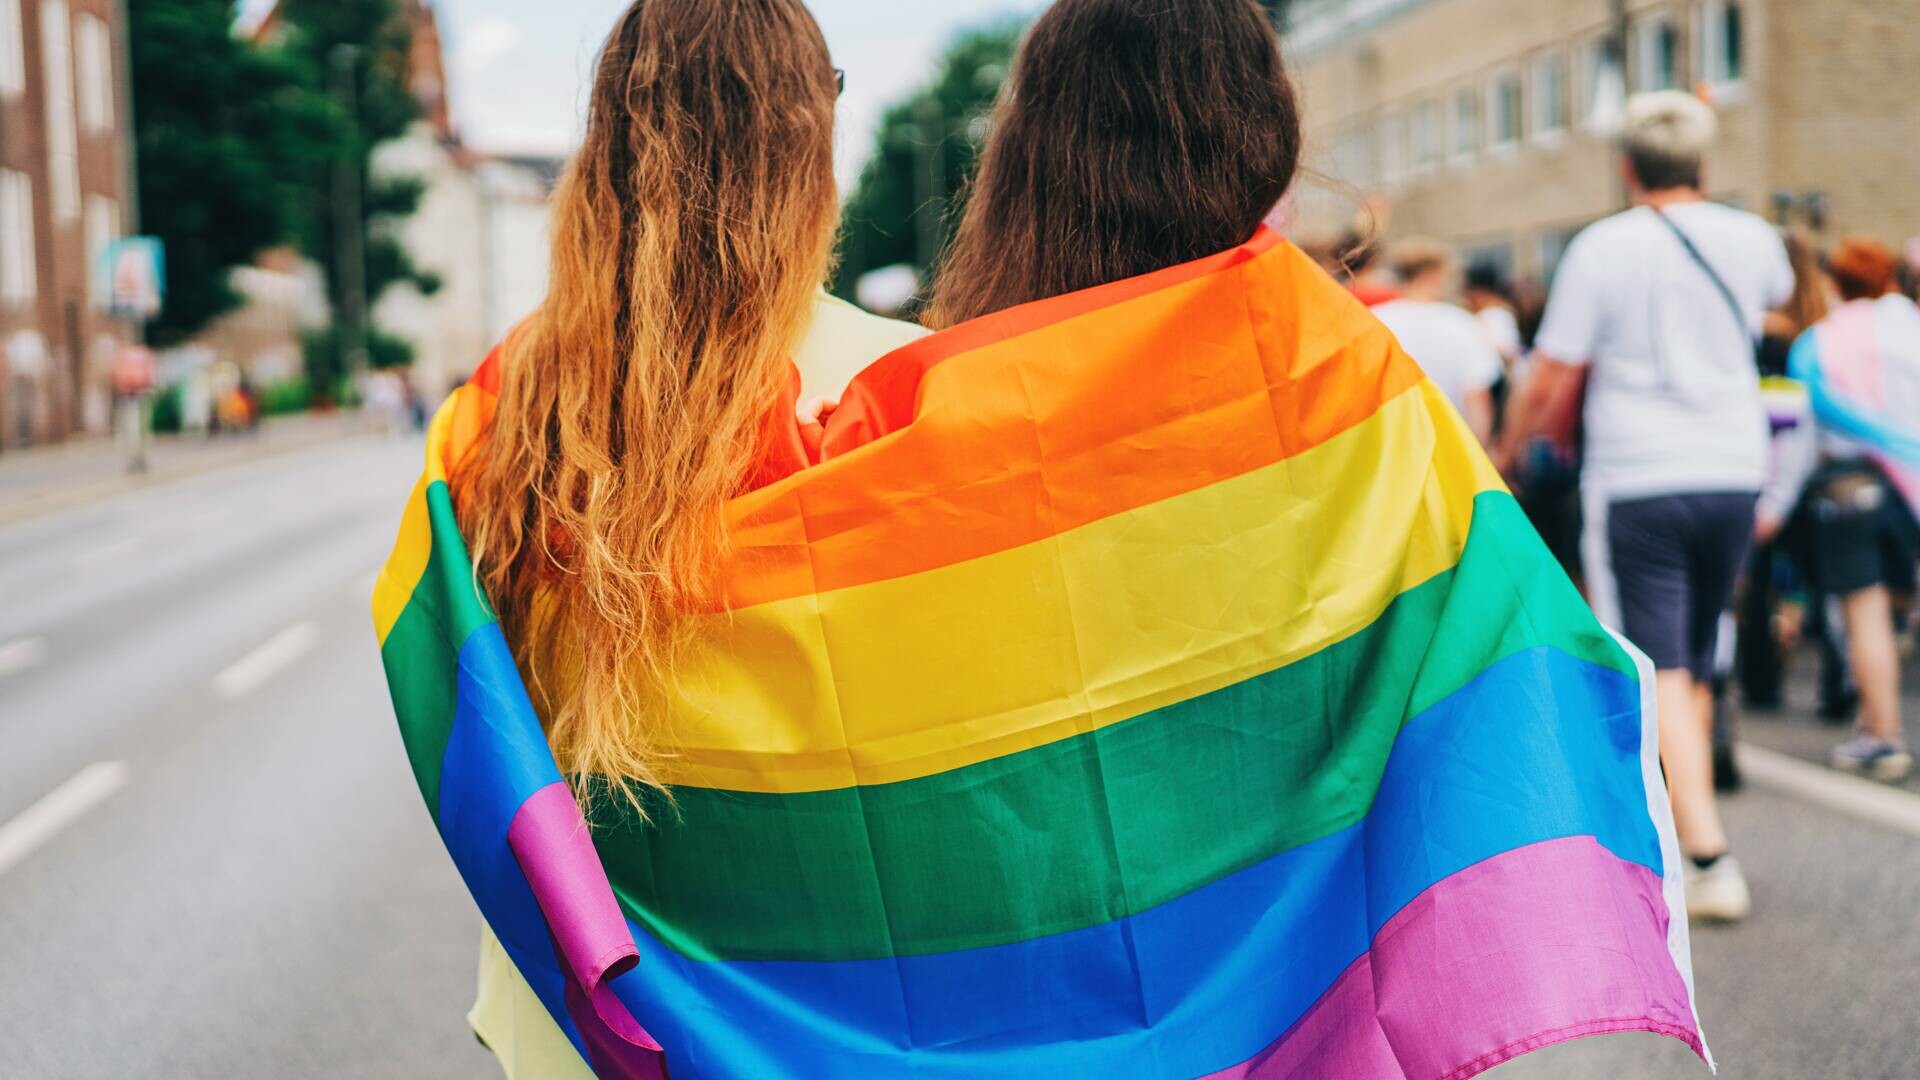 Românii sunt mai deschiși față de comunitatea LGBT și cred că toate familiile ar trebui protejate - sondaj